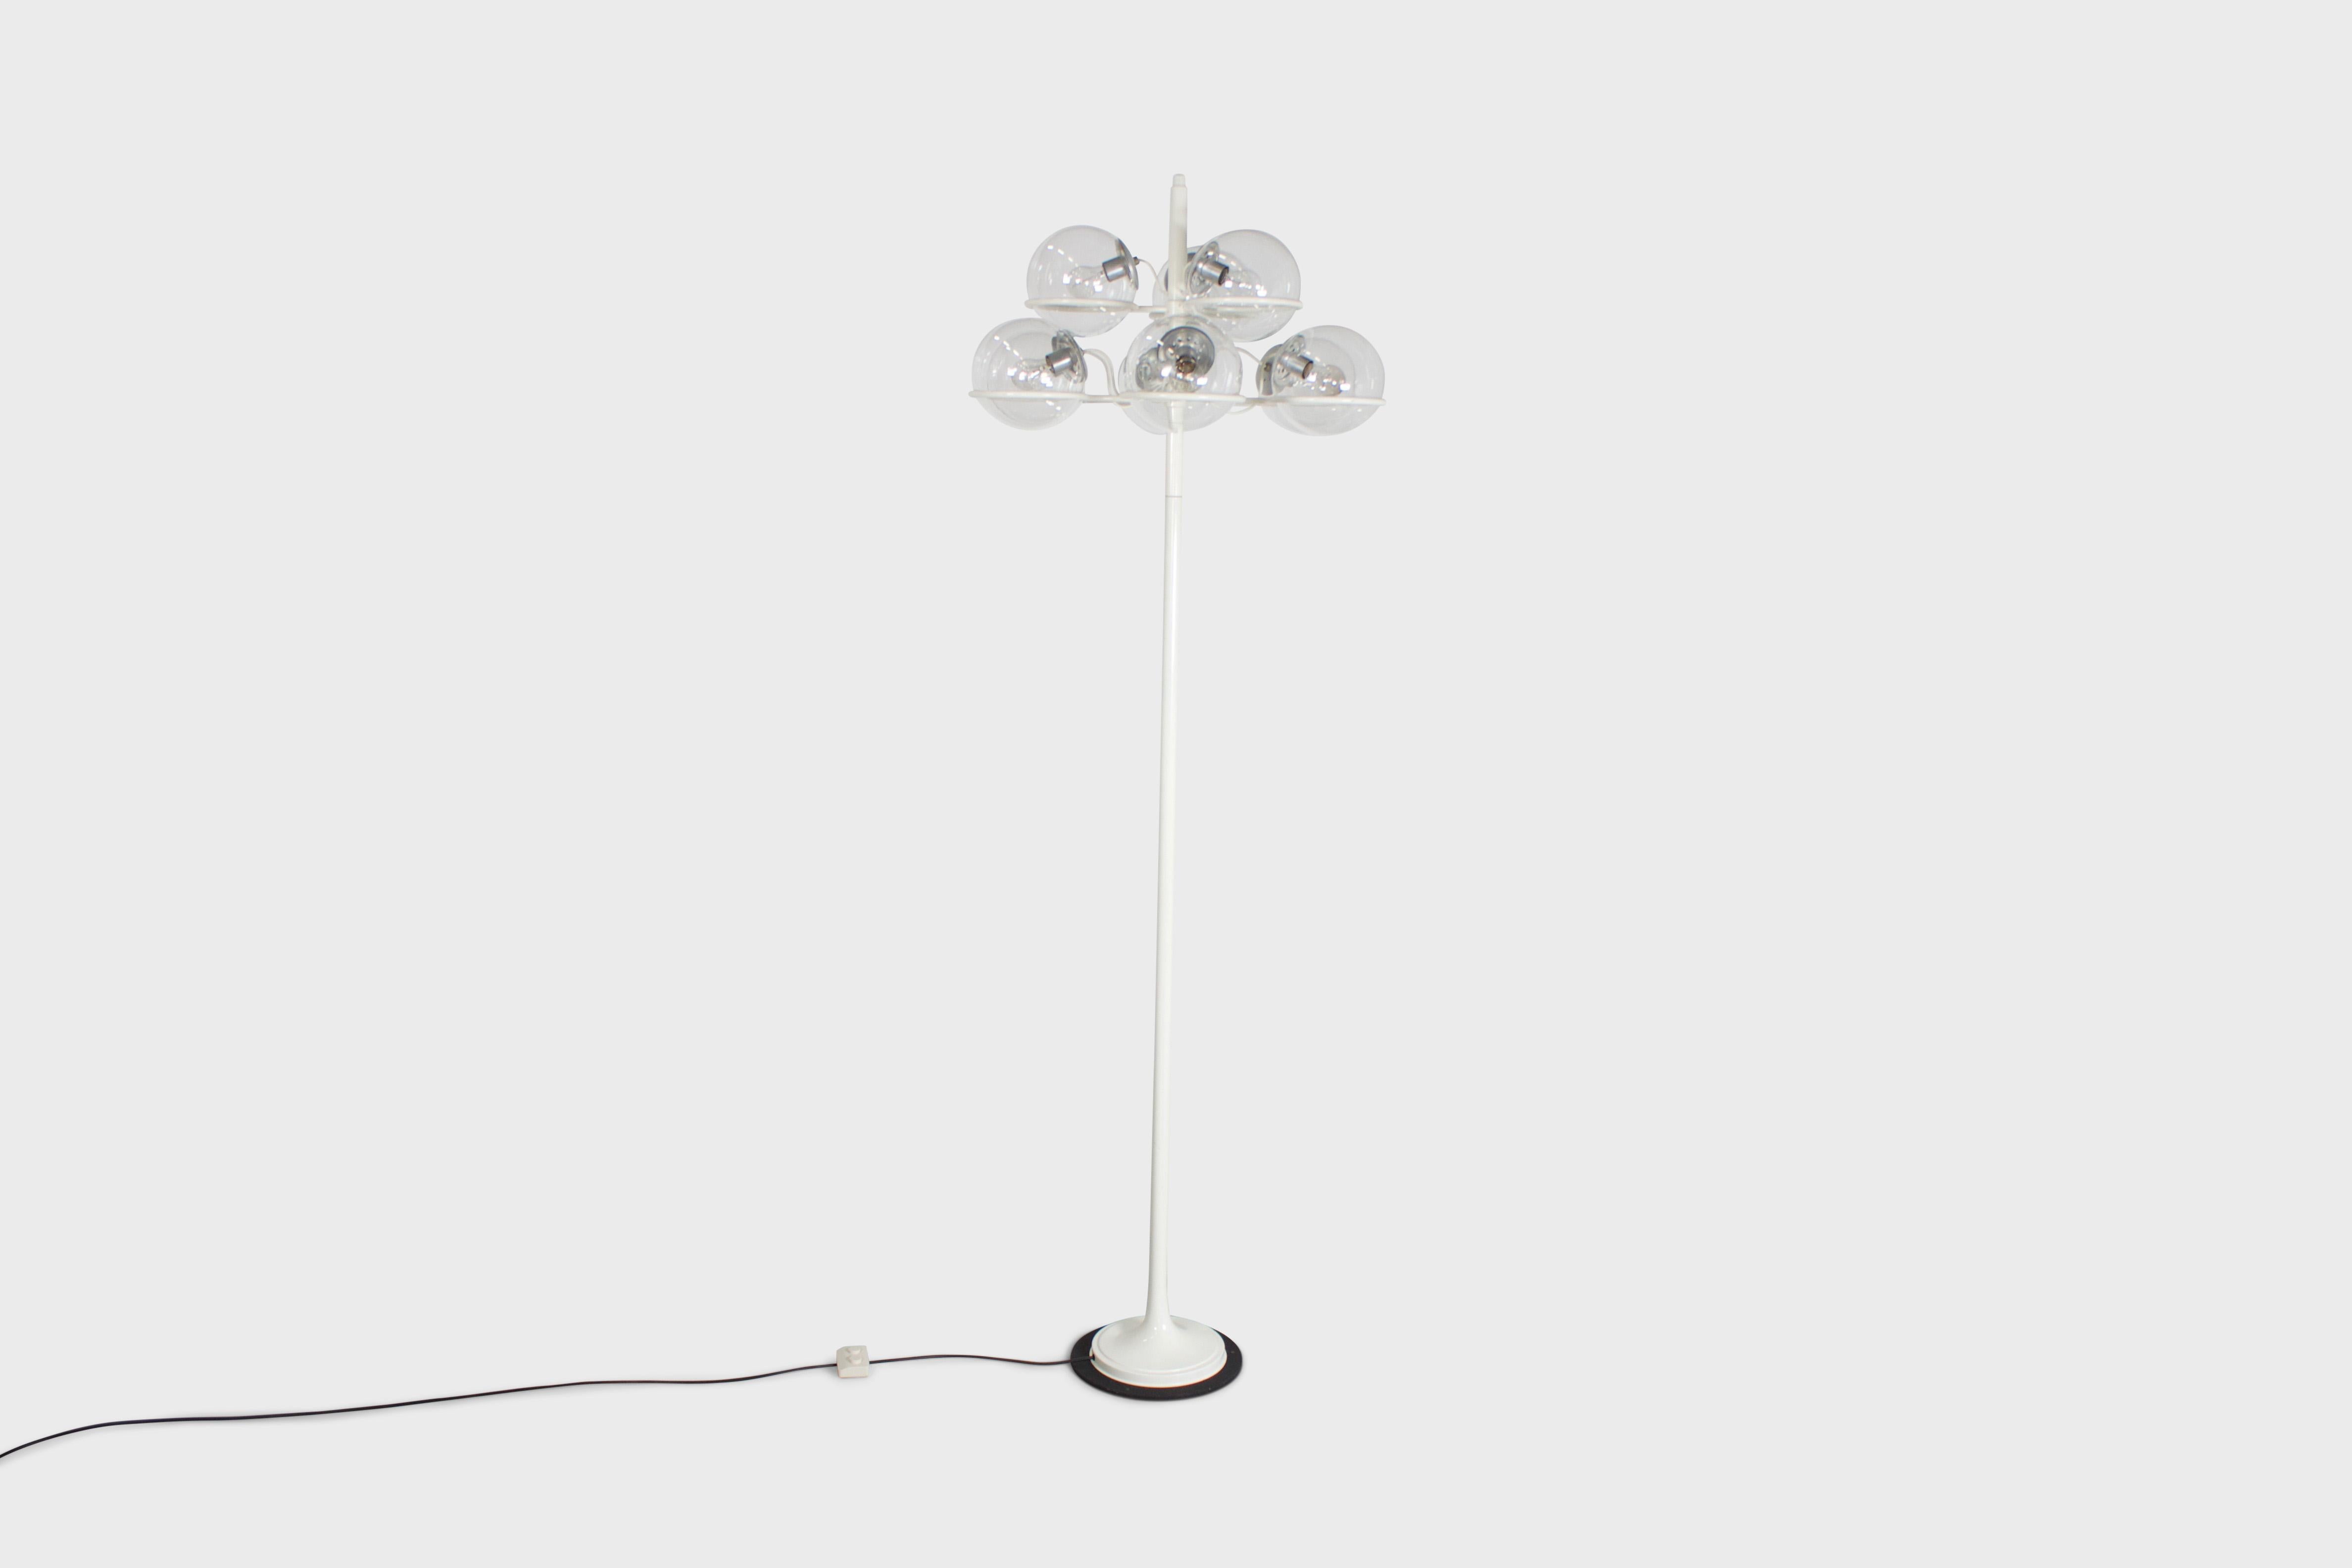 Grand lampadaire modèle 1094 en très bon état.

Conçu par Gino Sarfatti en 1966

Fabriqué par Arteluce, Italie 

La lampe se compose d'une lourde plaque de base en métal noir et d'une tige et d'une base en aluminium laqué.

Il possède 9 diffuseurs